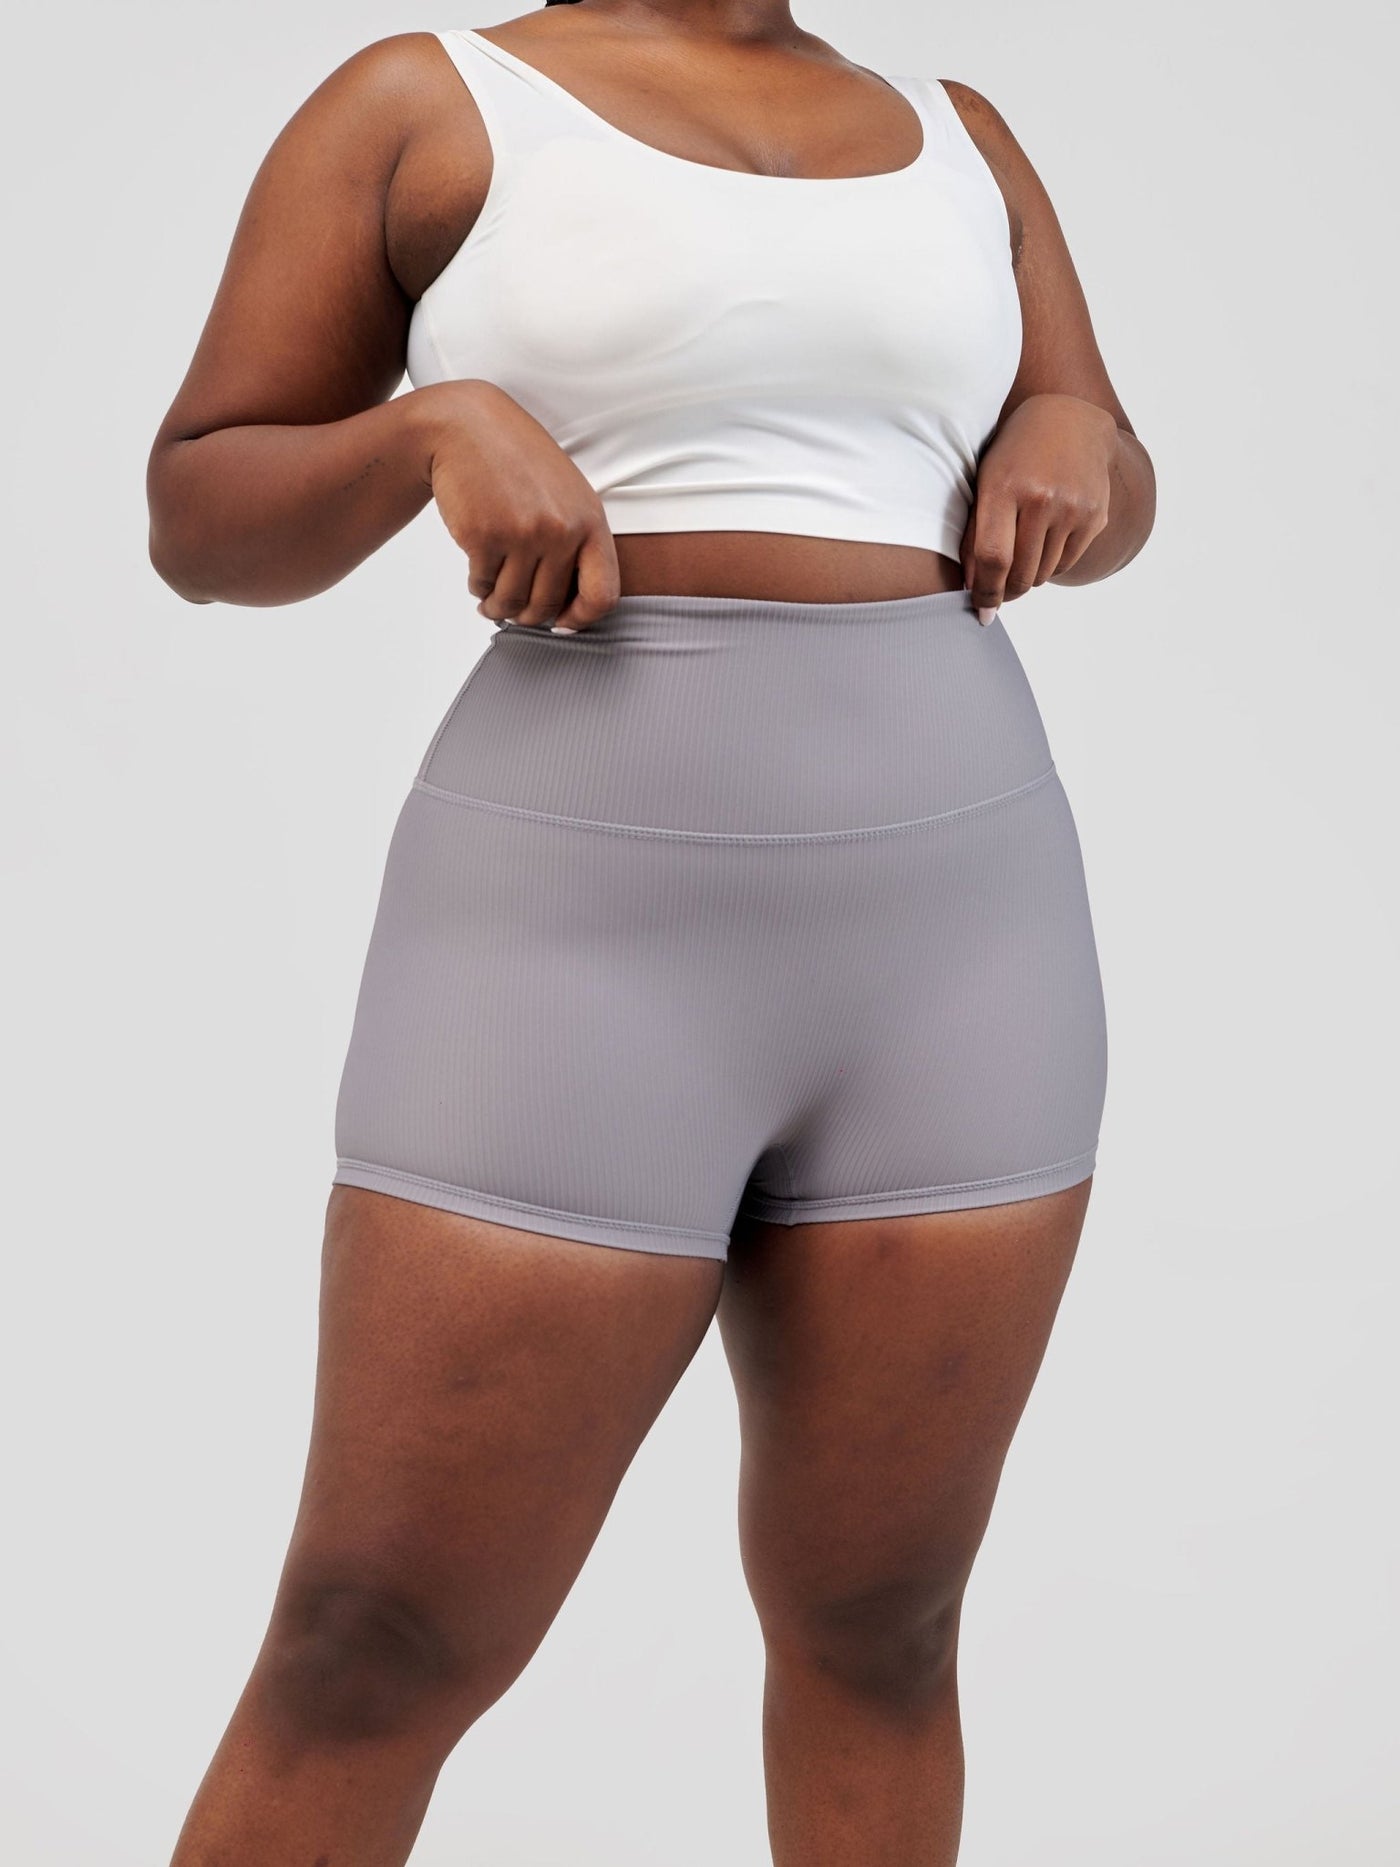 Ava Fitness Dazzle Workout Shorts - Grey - Shopzetu